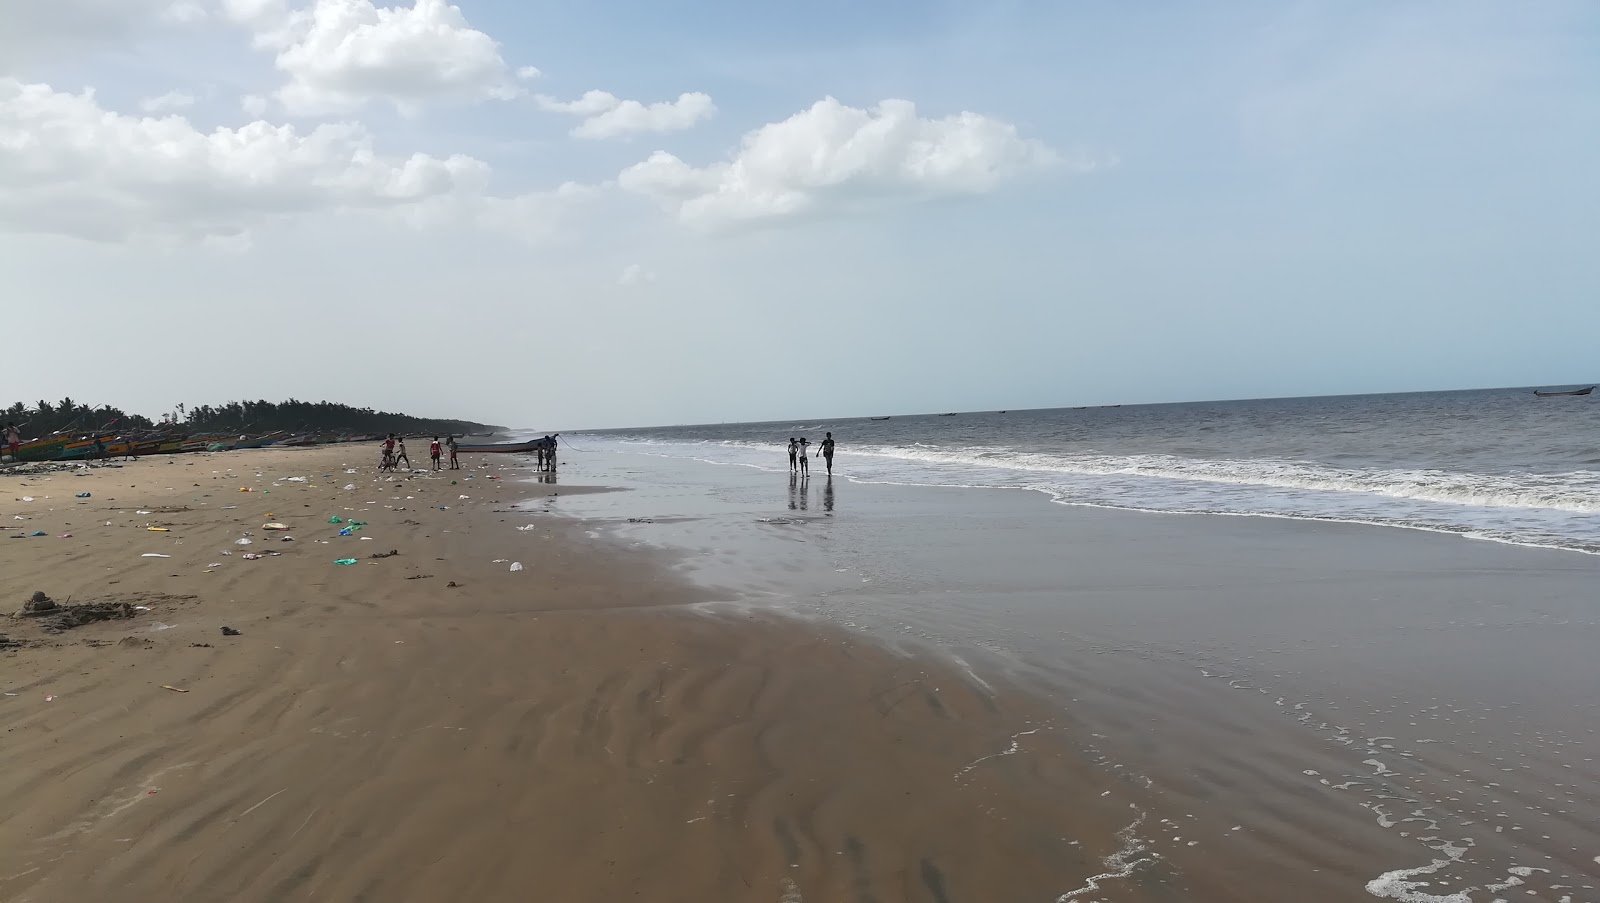 Kameswaram Beach'in fotoğrafı - rahatlamayı sevenler arasında popüler bir yer